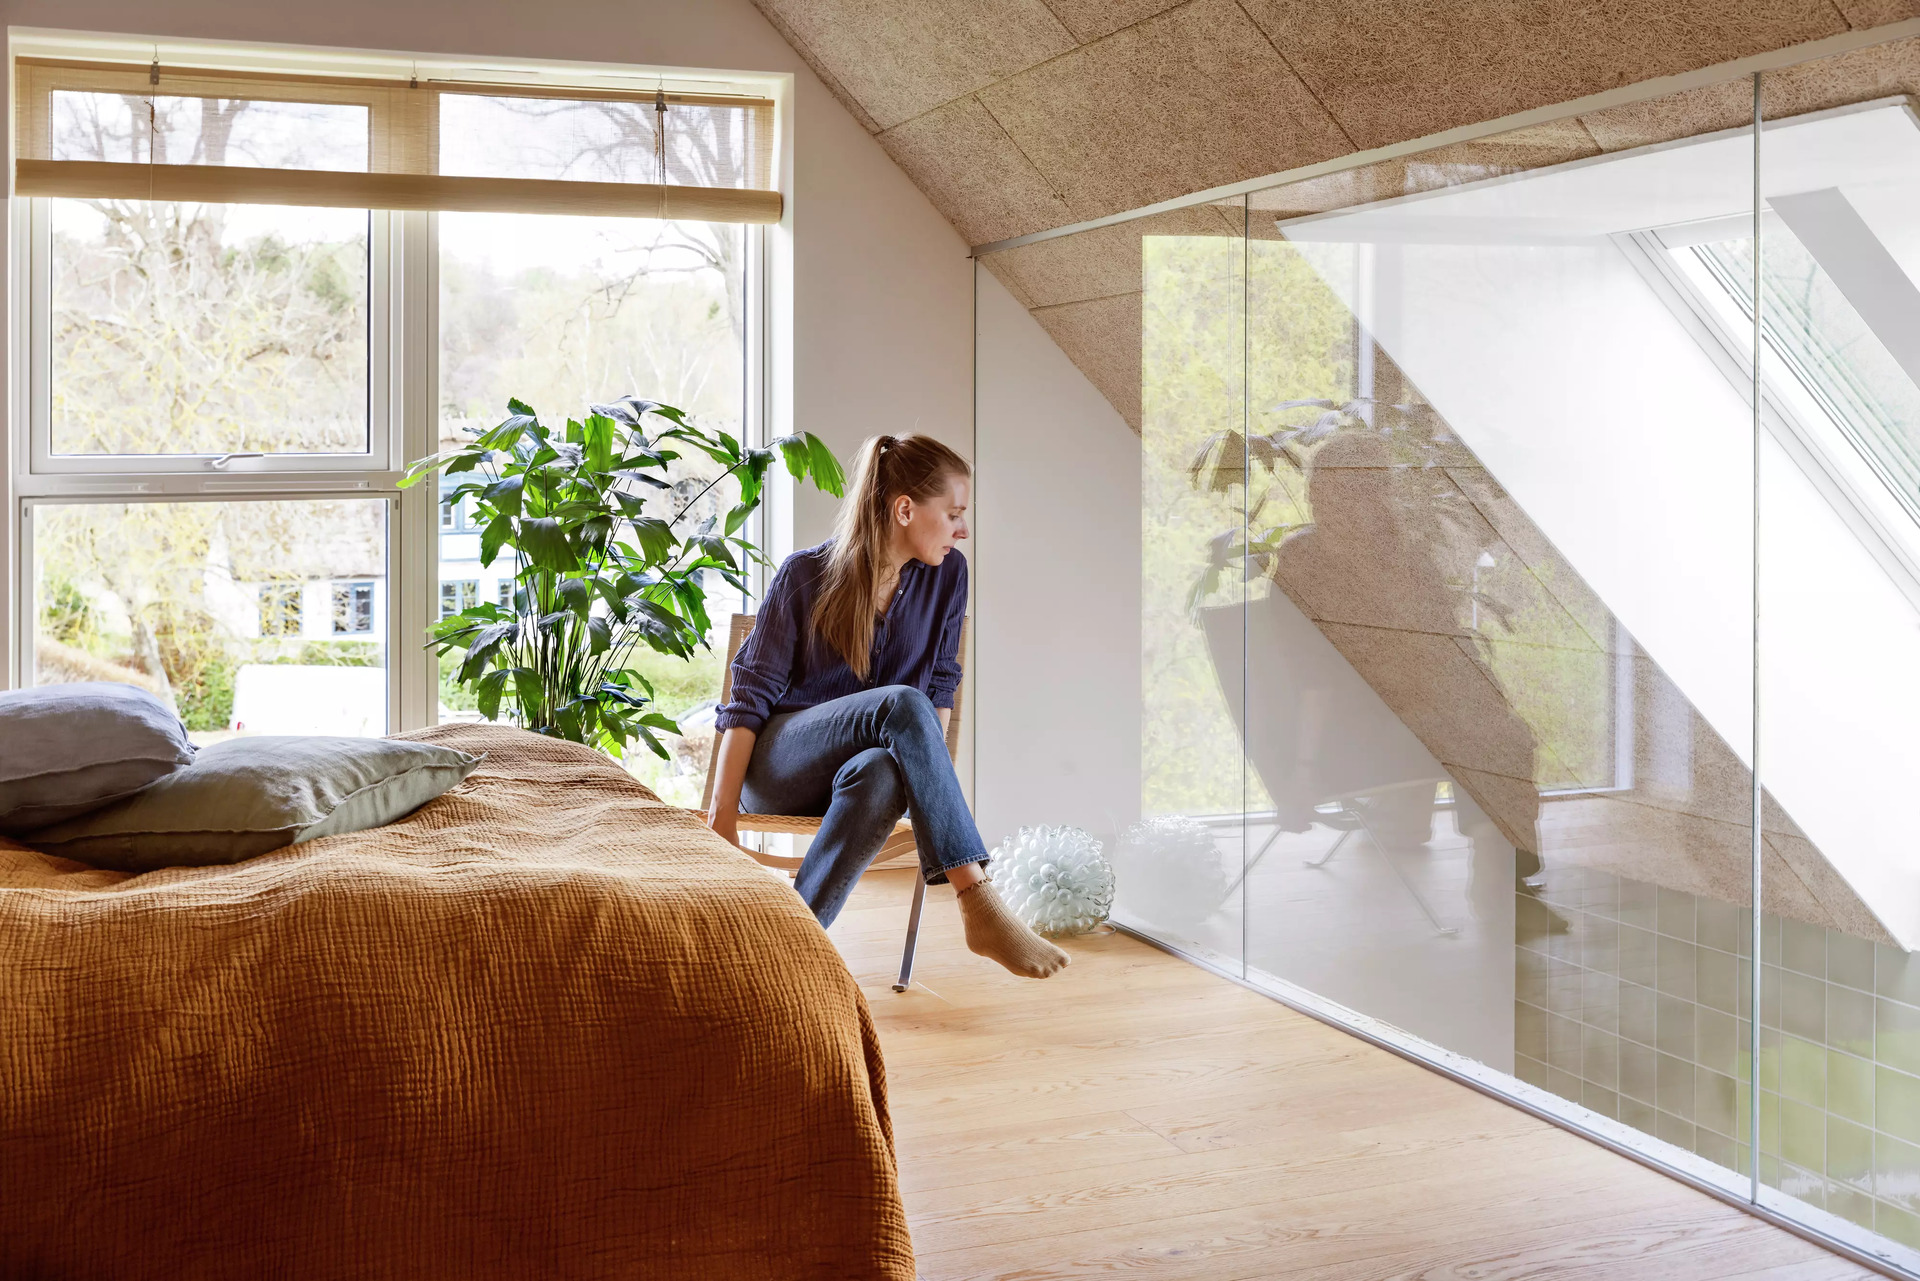 Hyggeligt loftsrum soveværelse med VELUX ovenlysvindue og reflekterende glasvæg, med udsigt til grønne områder.